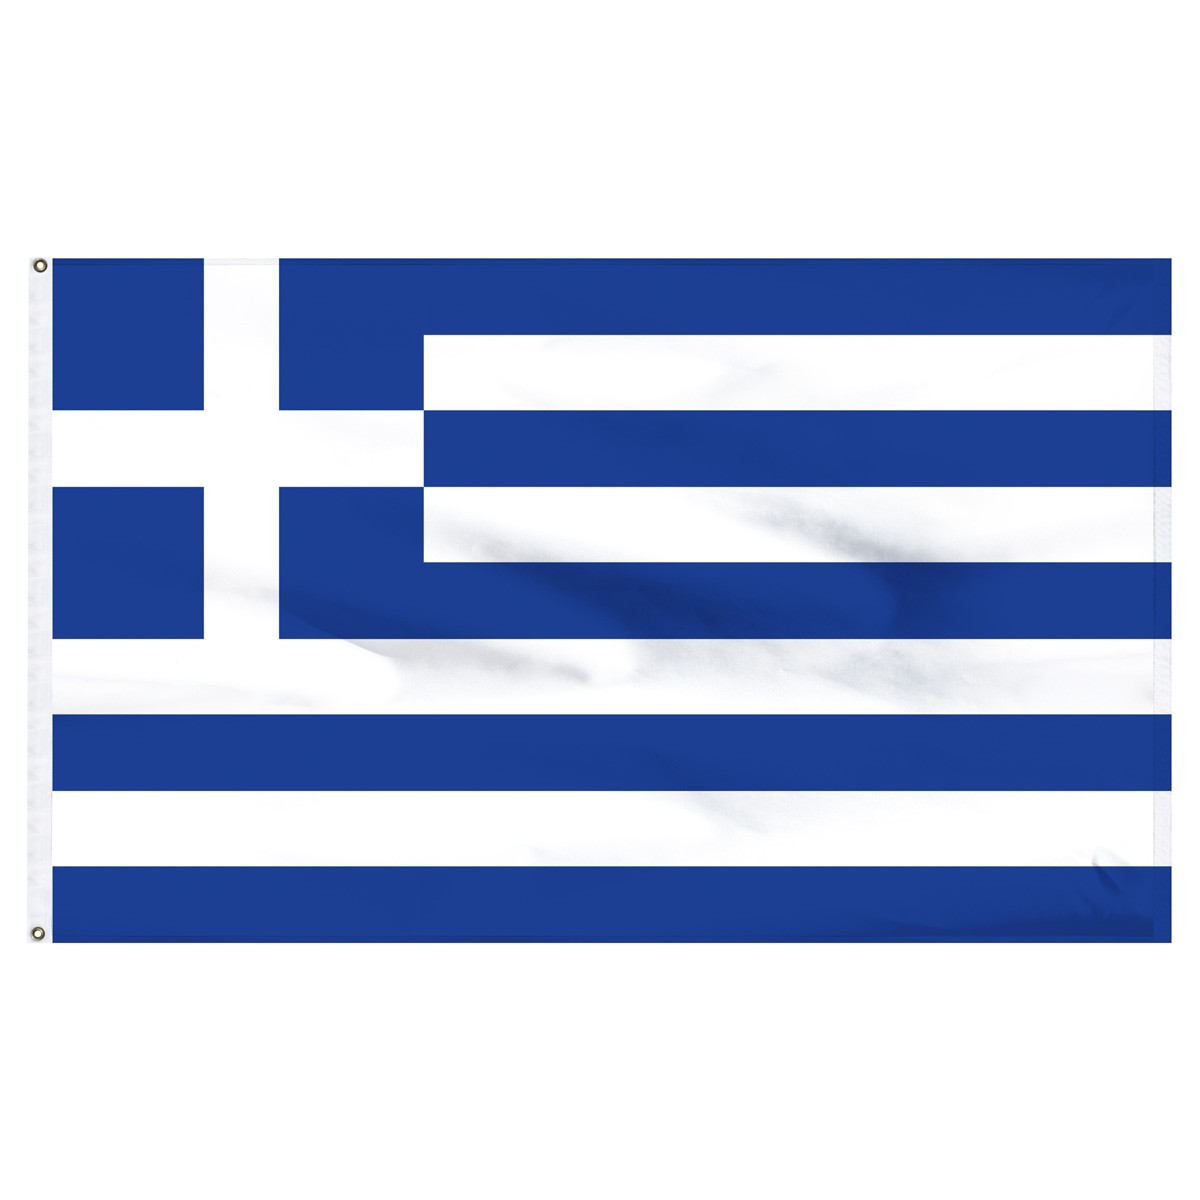 Greece 2' x 3' Outdoor Nylon Flag